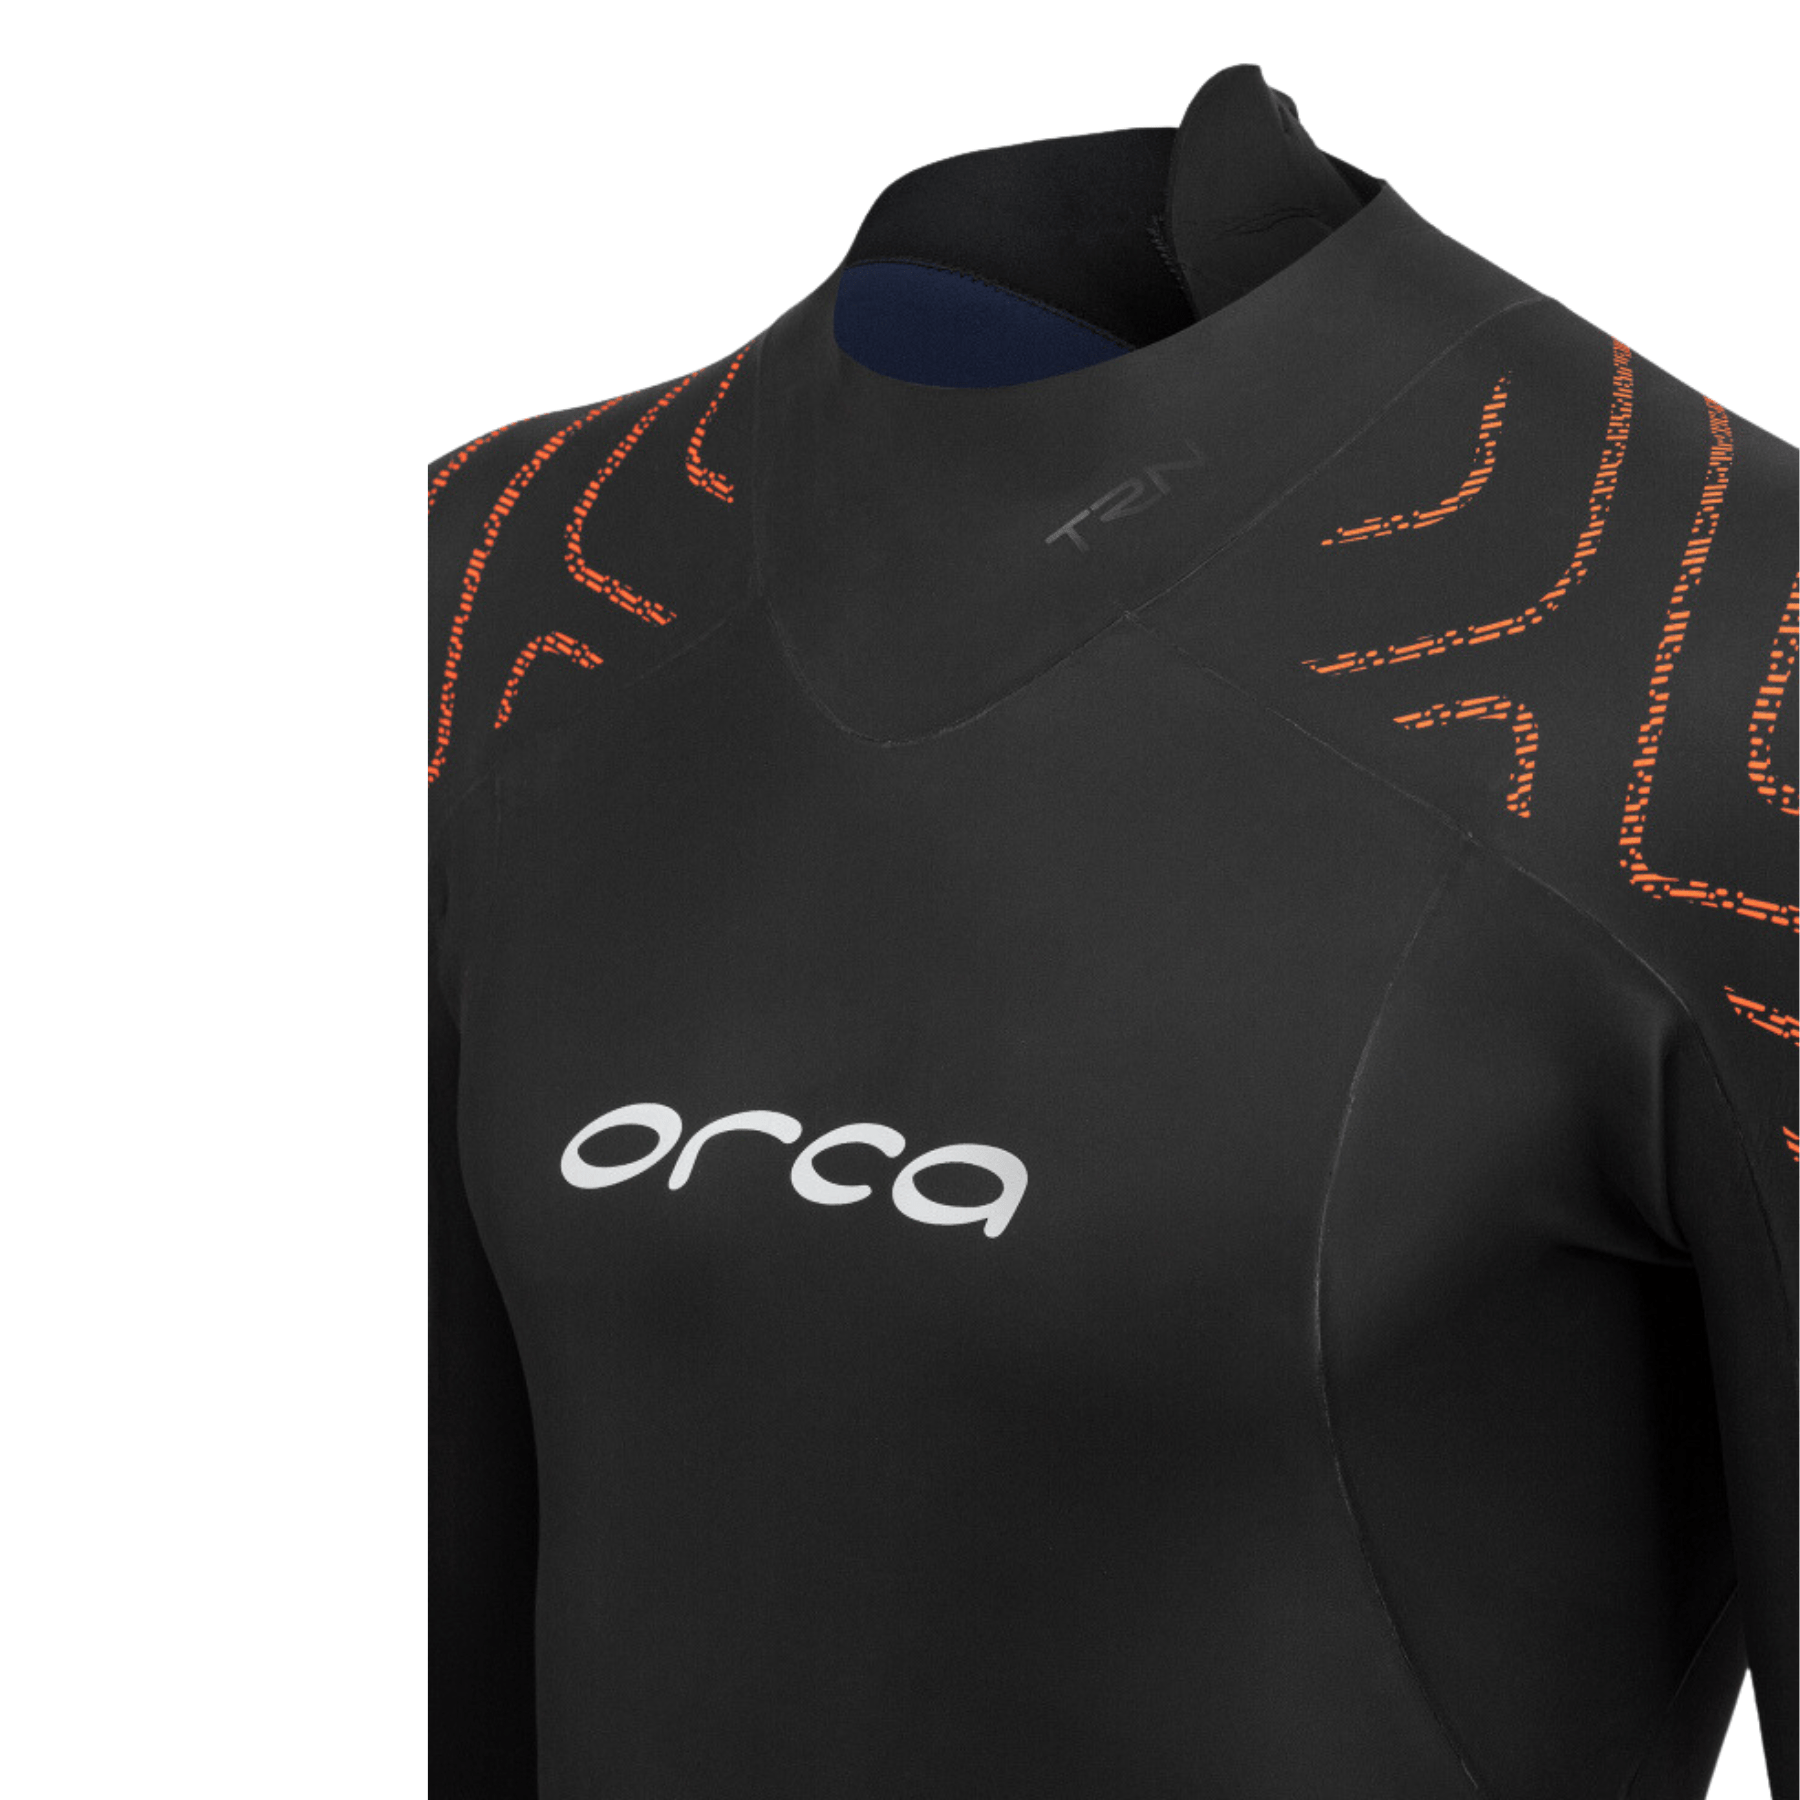 Orca Vitalis Vitalis/Openwater Core TRN Mens Wetsuit